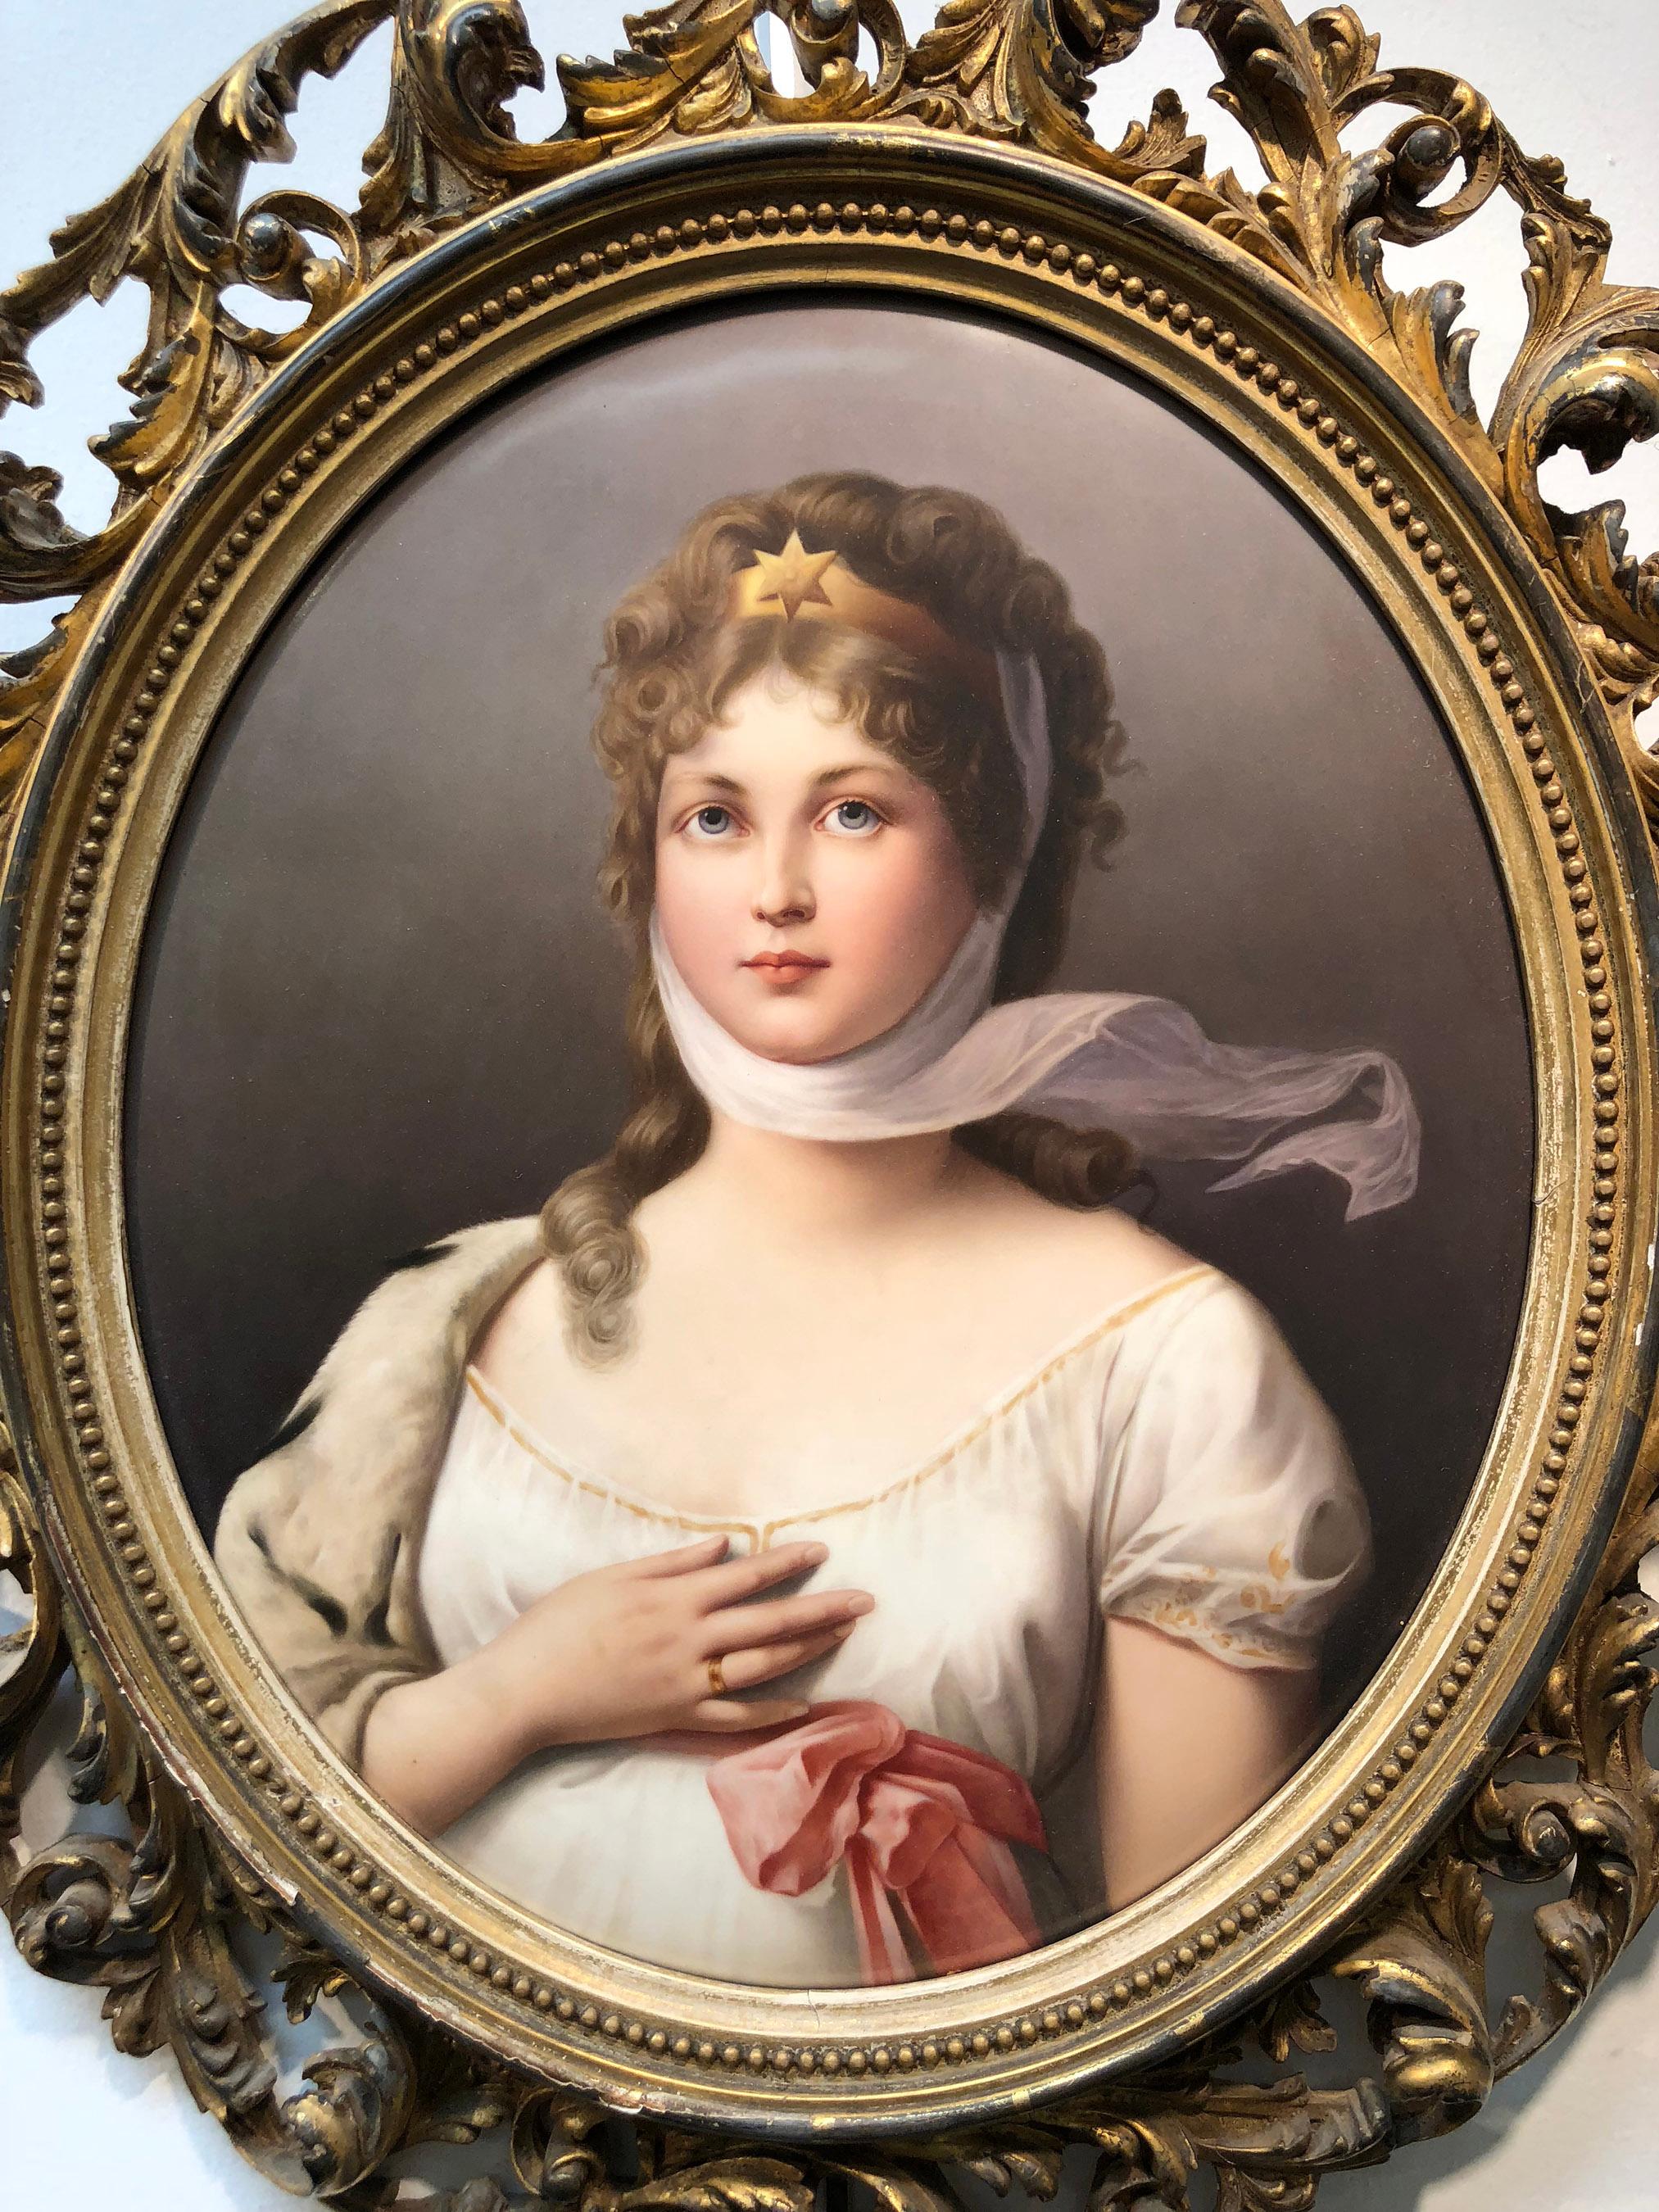 Queen Louise - Painting by Königliche Porzellan-Manufaktur (KPM)